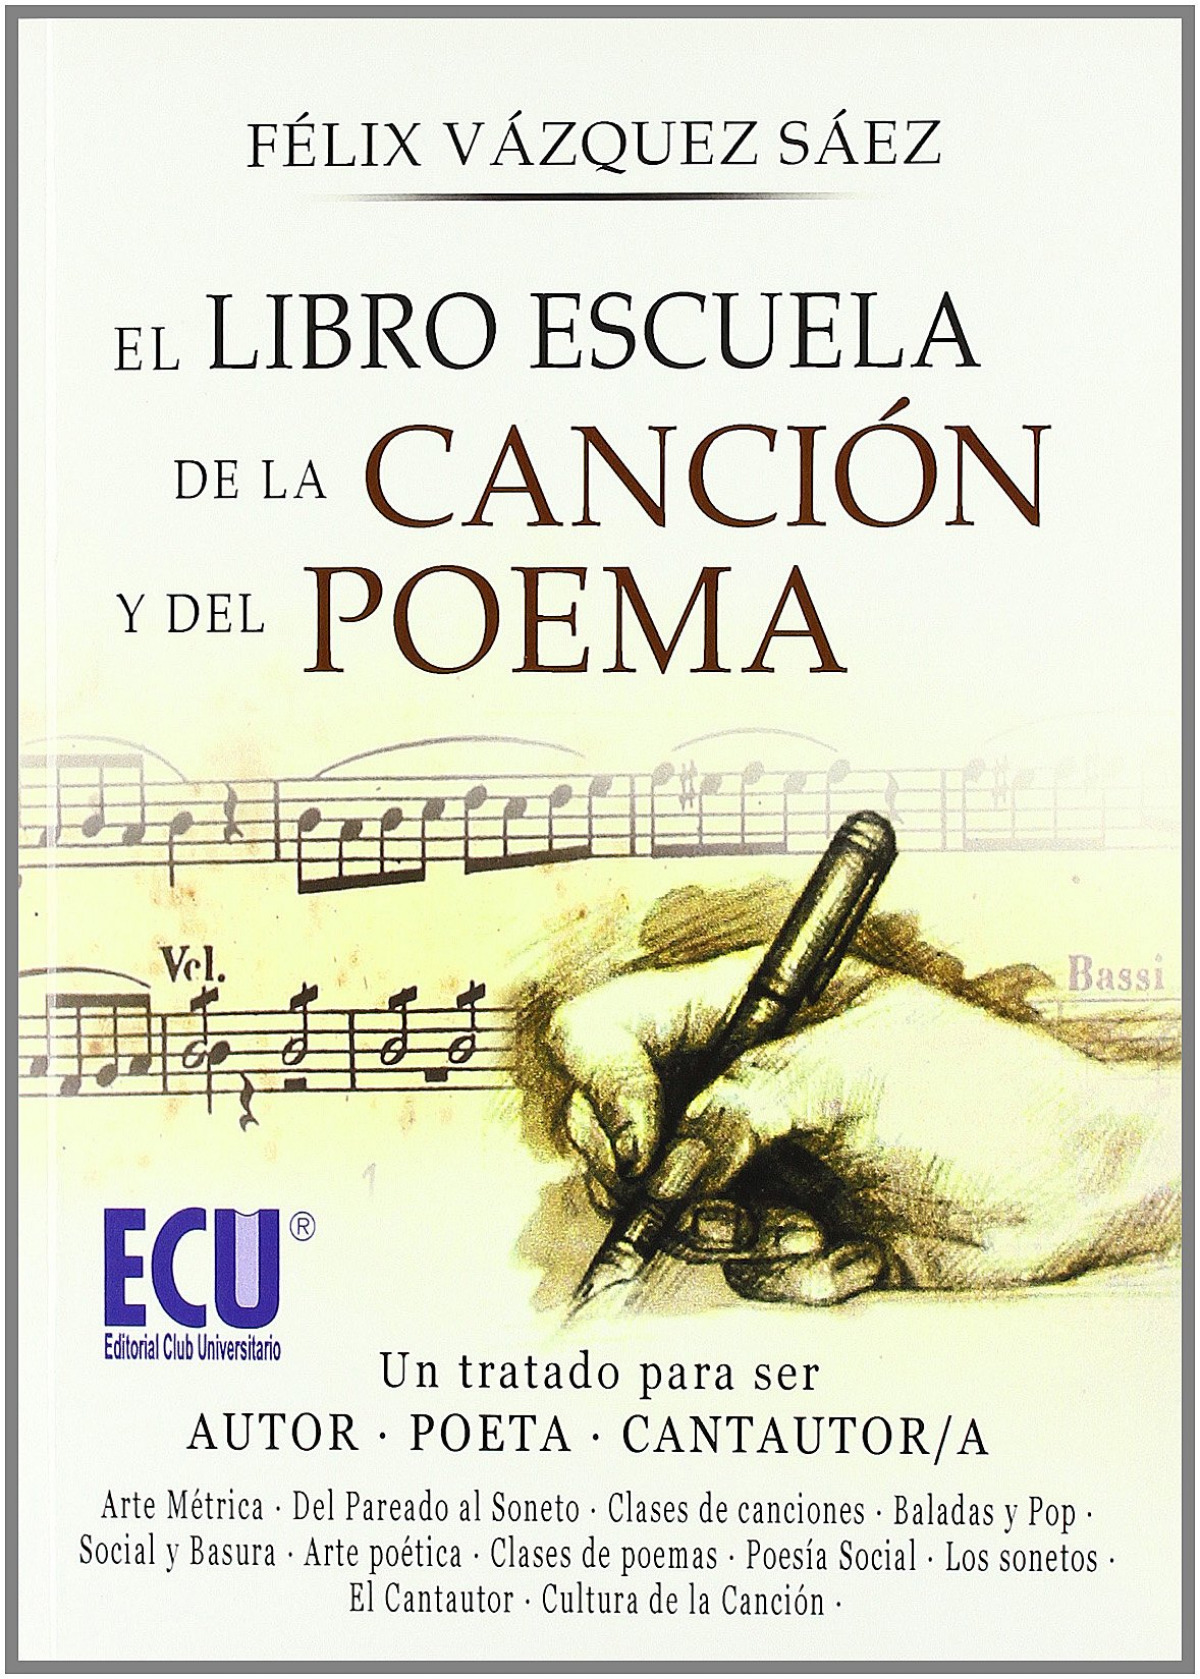 El libro escuela de la canción y el poema - Vv.Aa.